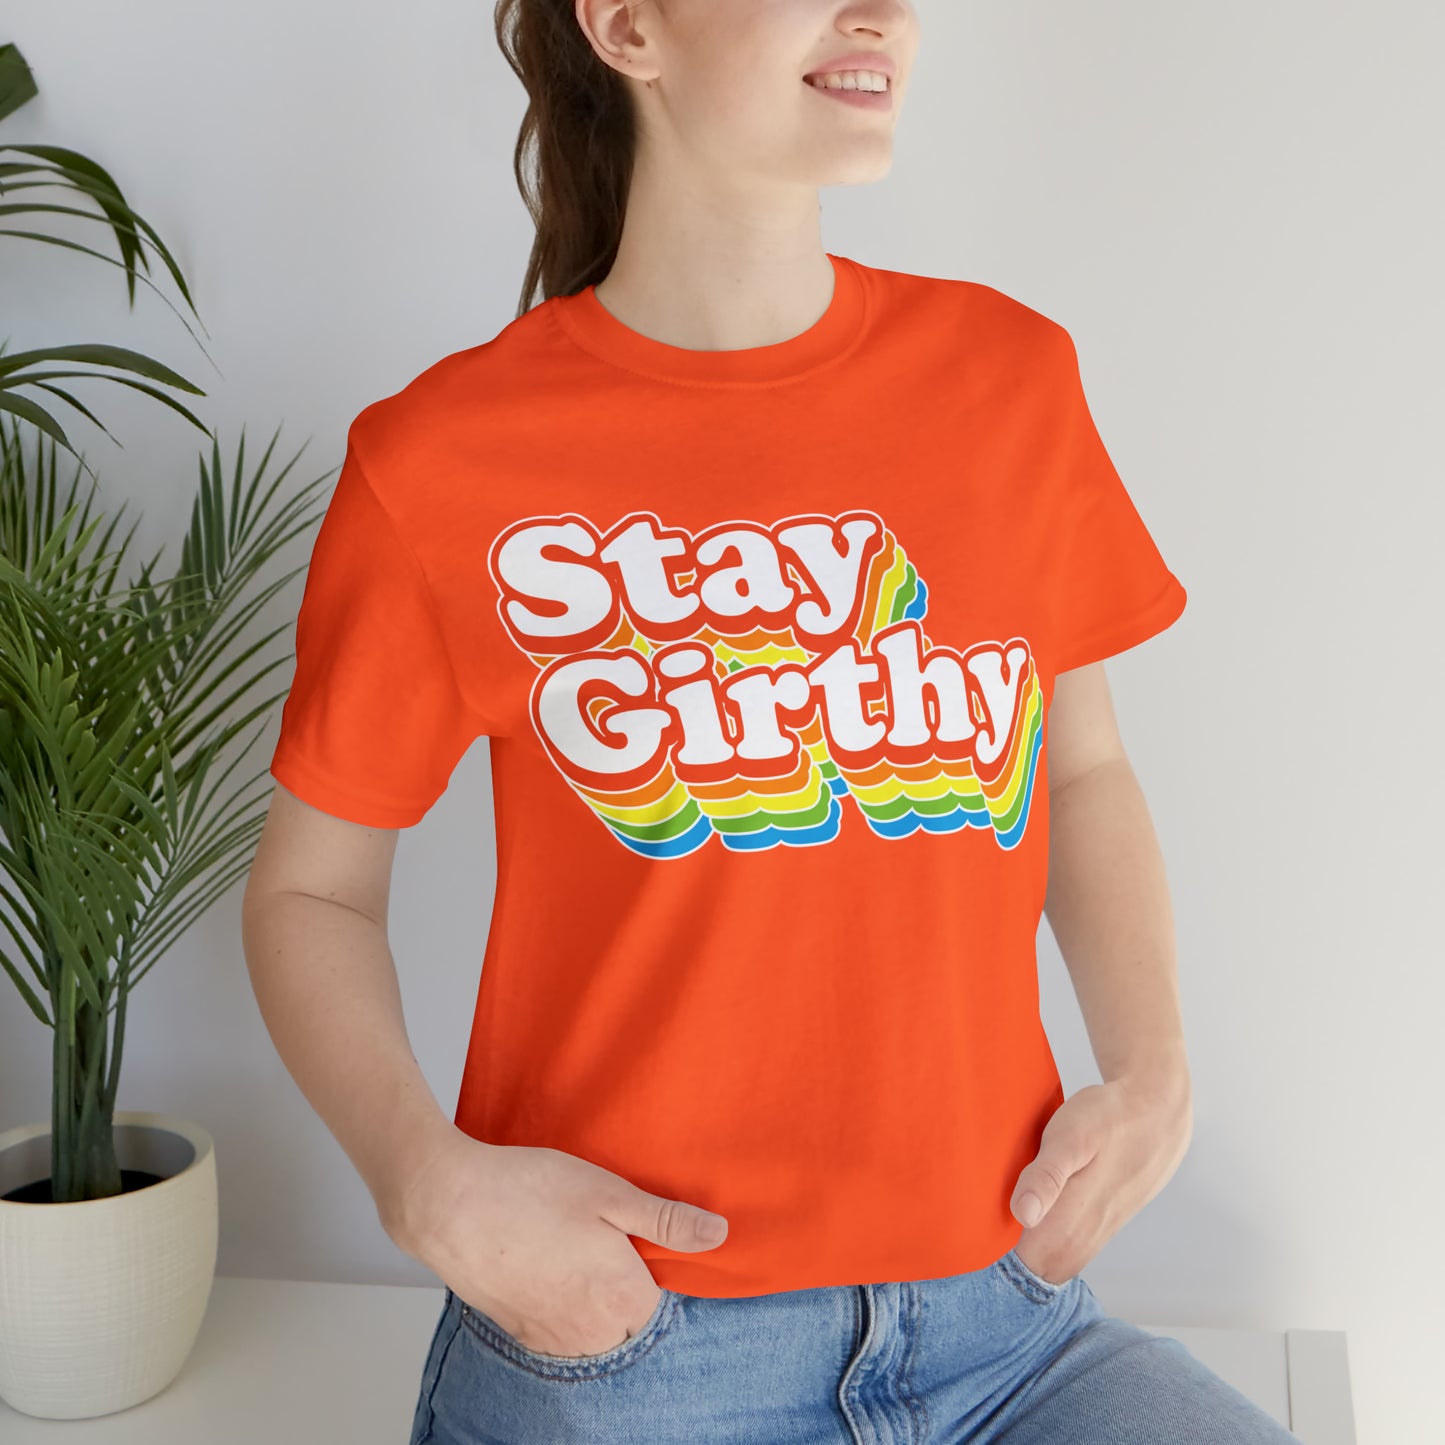 Stay Girthy 70s-chic